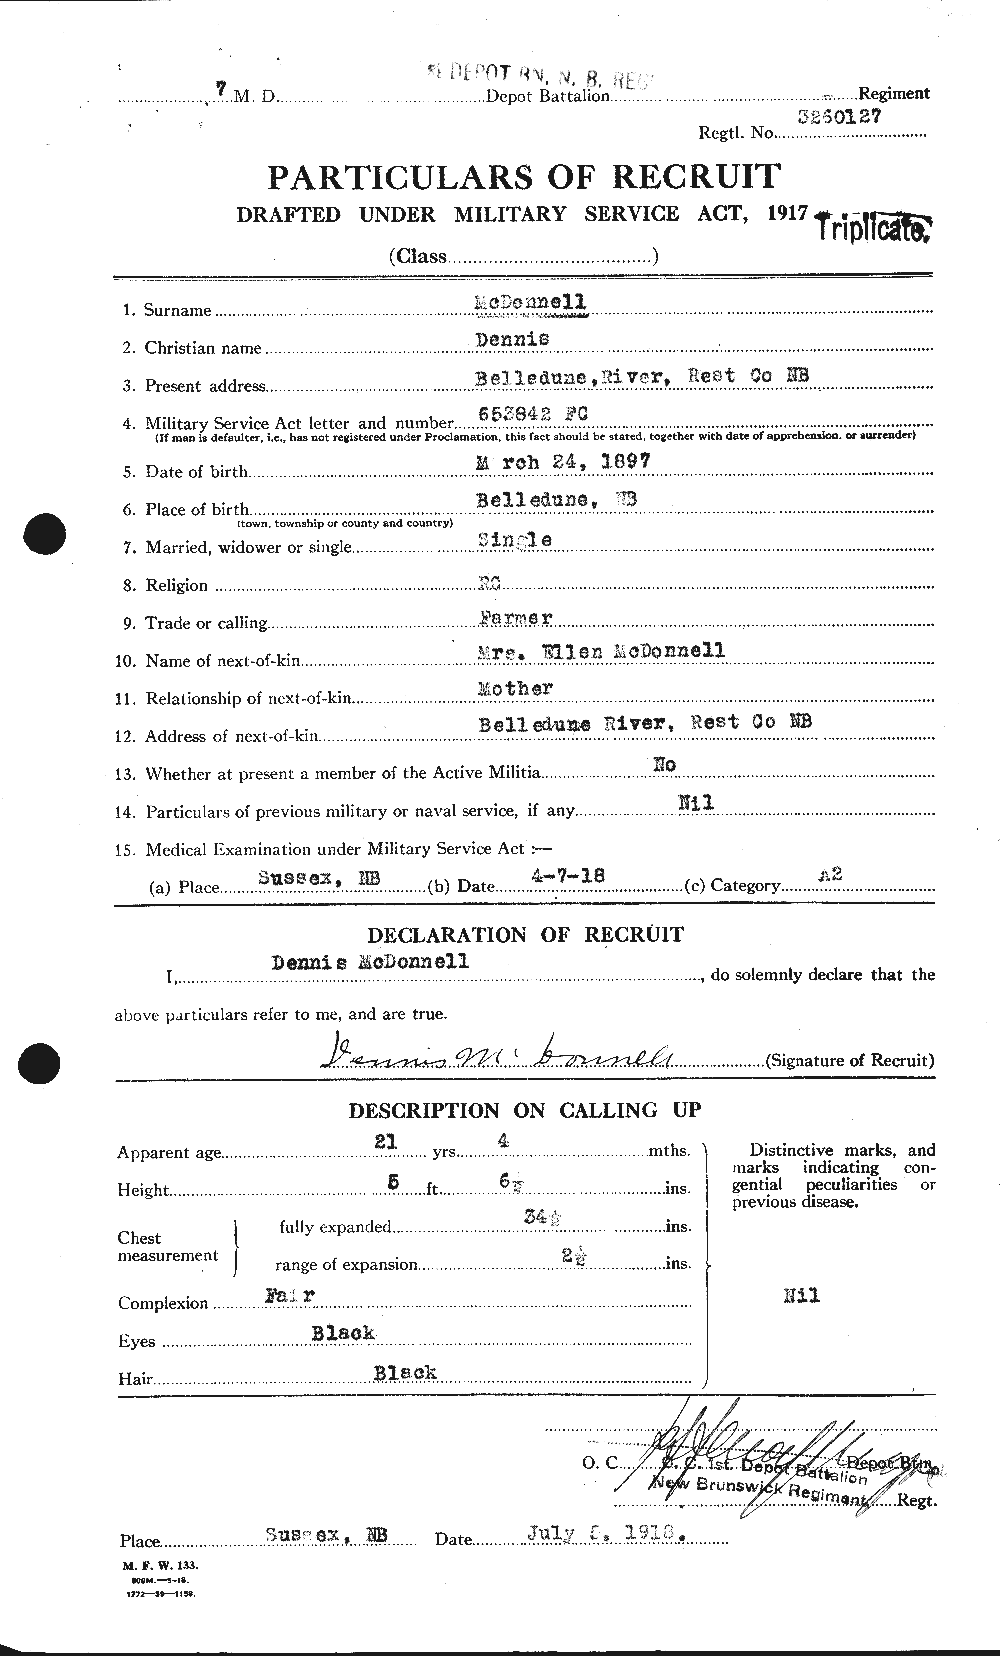 Dossiers du Personnel de la Première Guerre mondiale - CEC 521525a